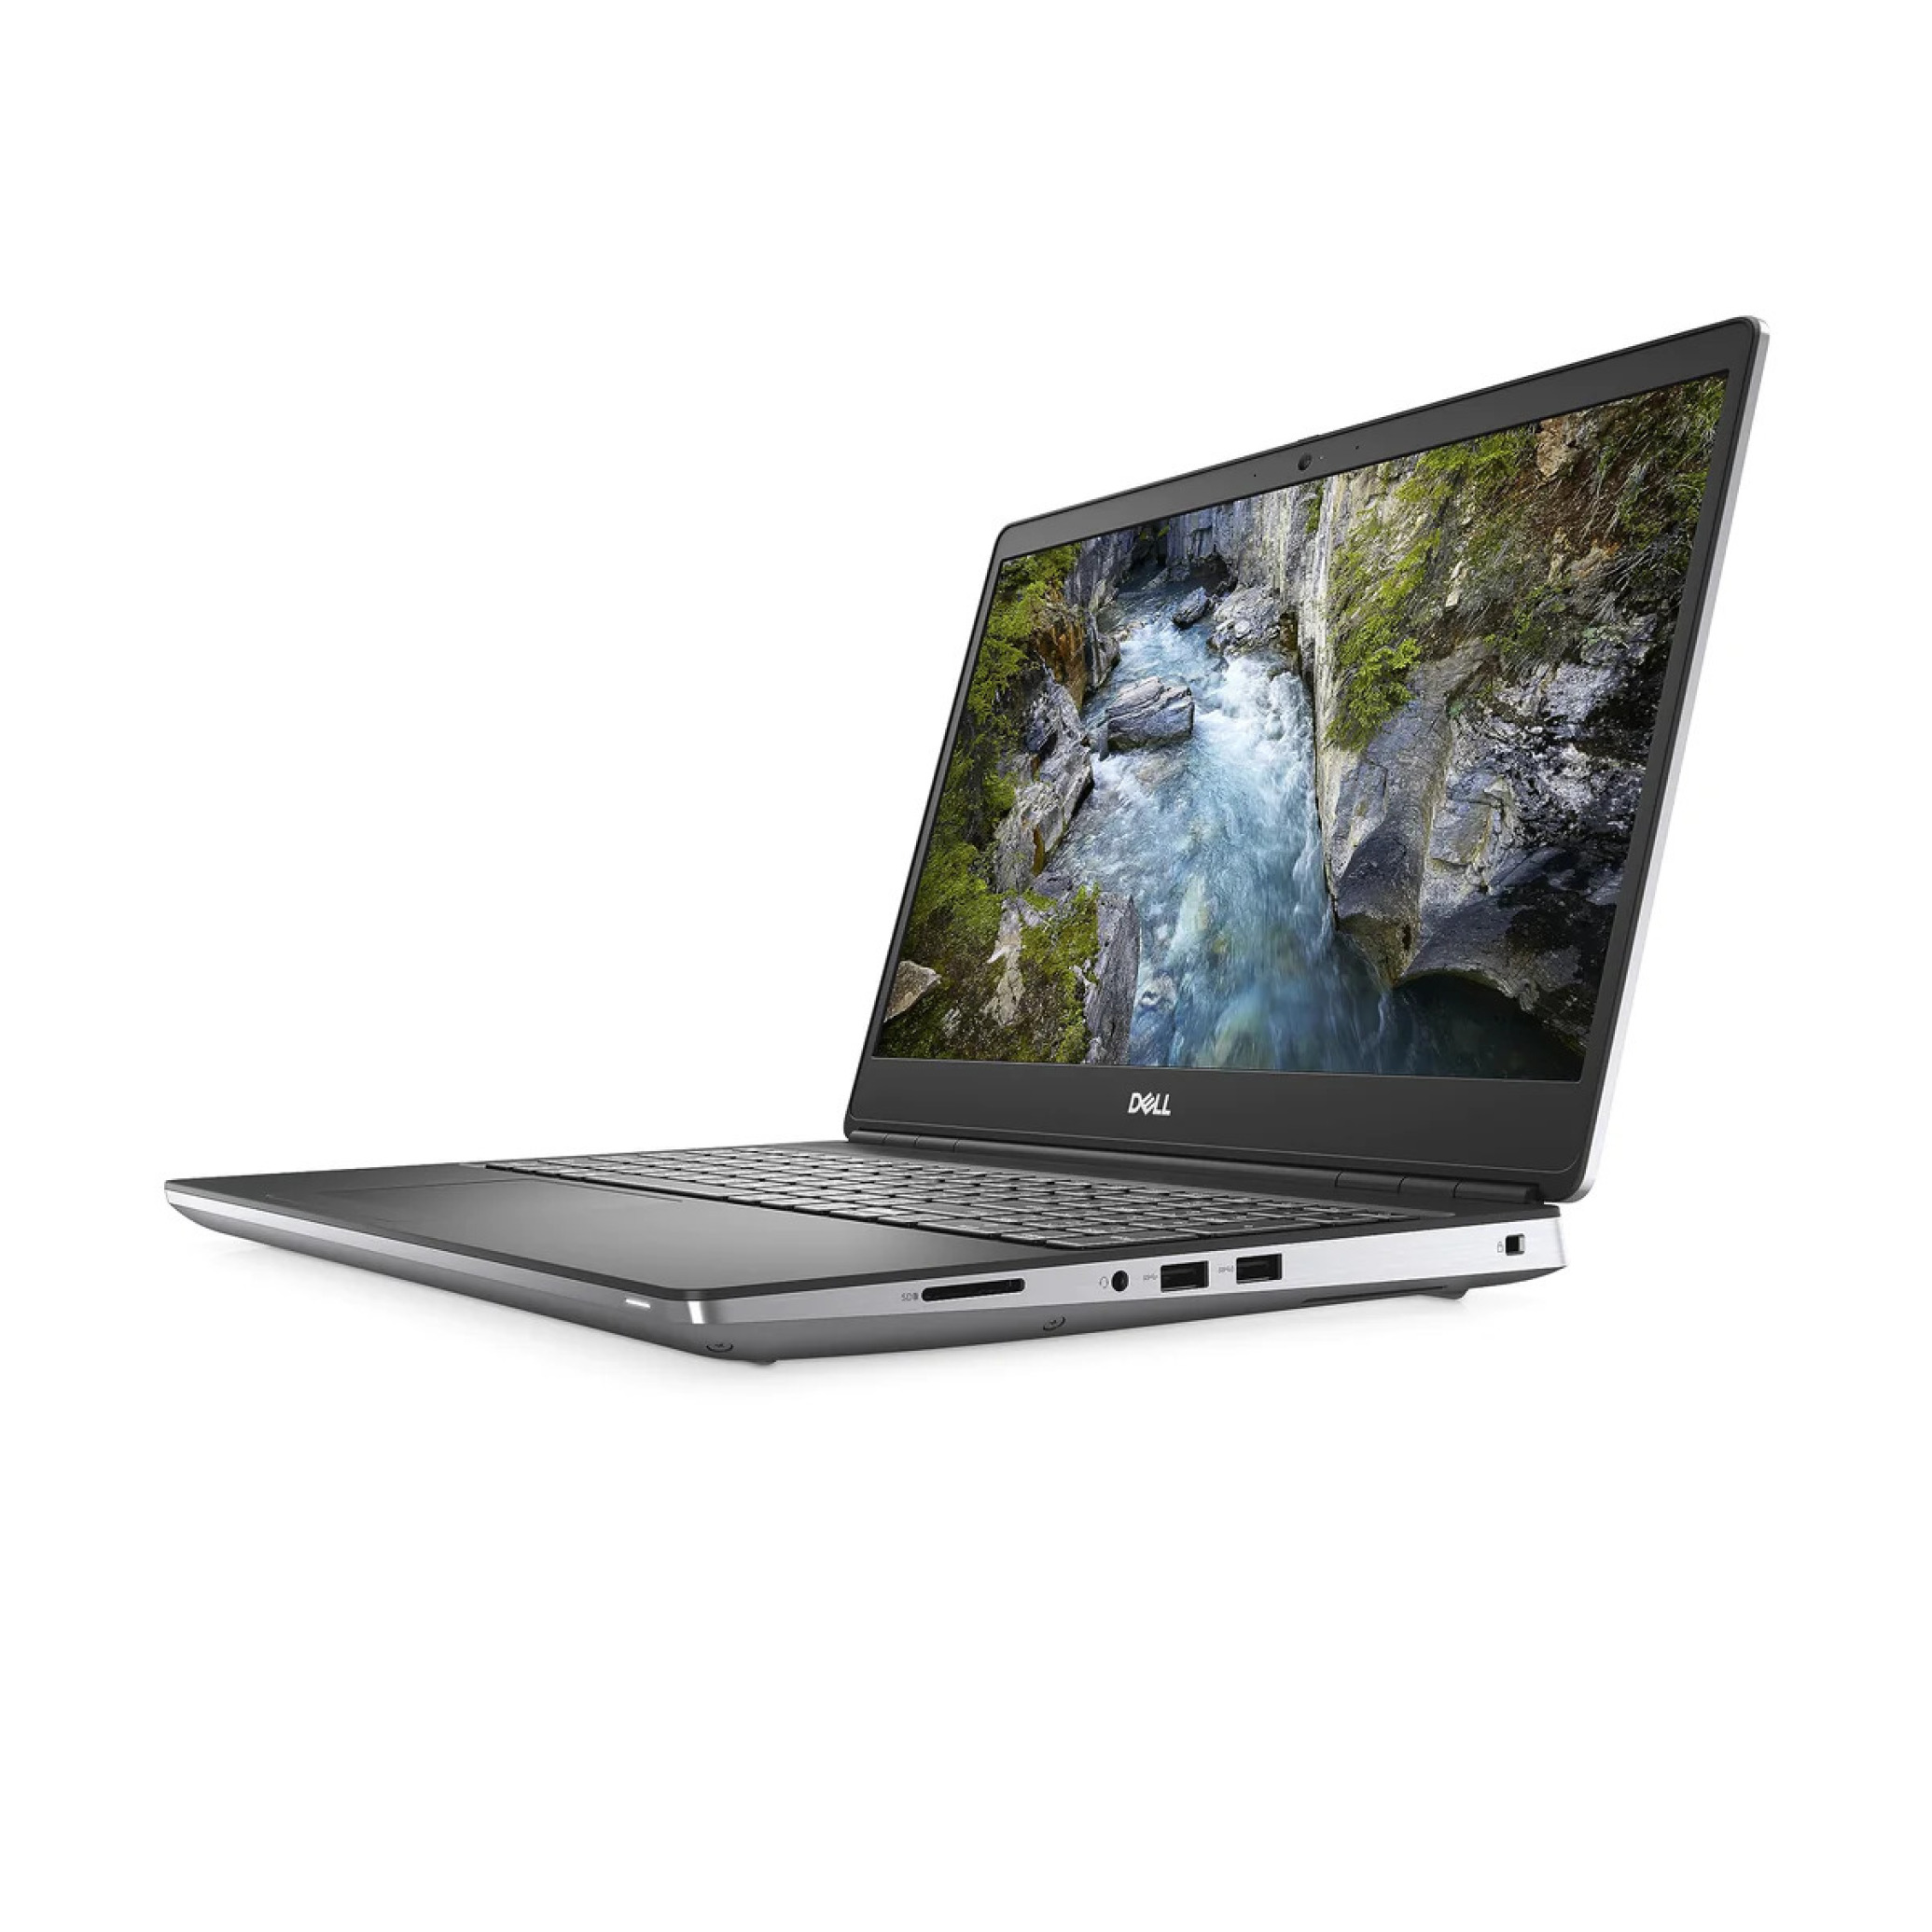  لپ تاپ مخصوص رندر و گیم DELL مدل Precision 7550 پردازنده زئون | لاکچری لپ تاپ 